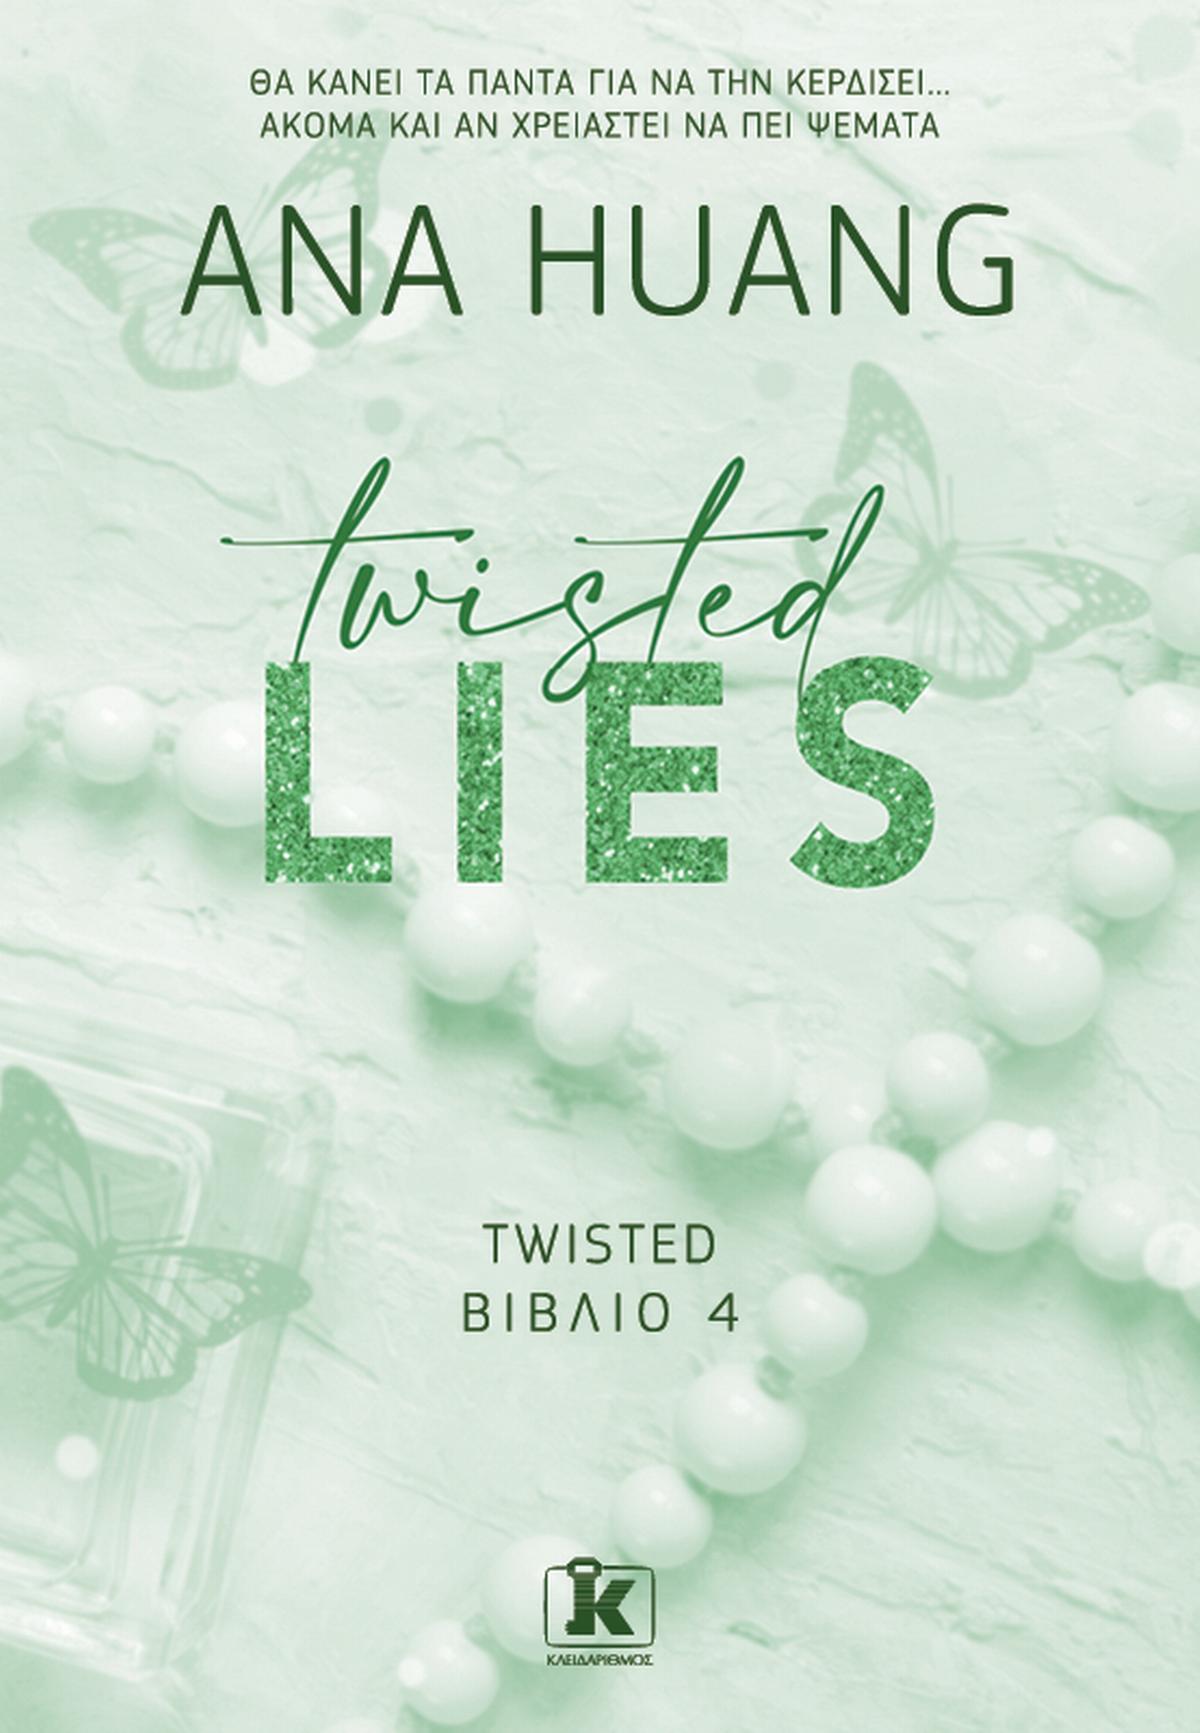 Twisted lies (ελληνικά)